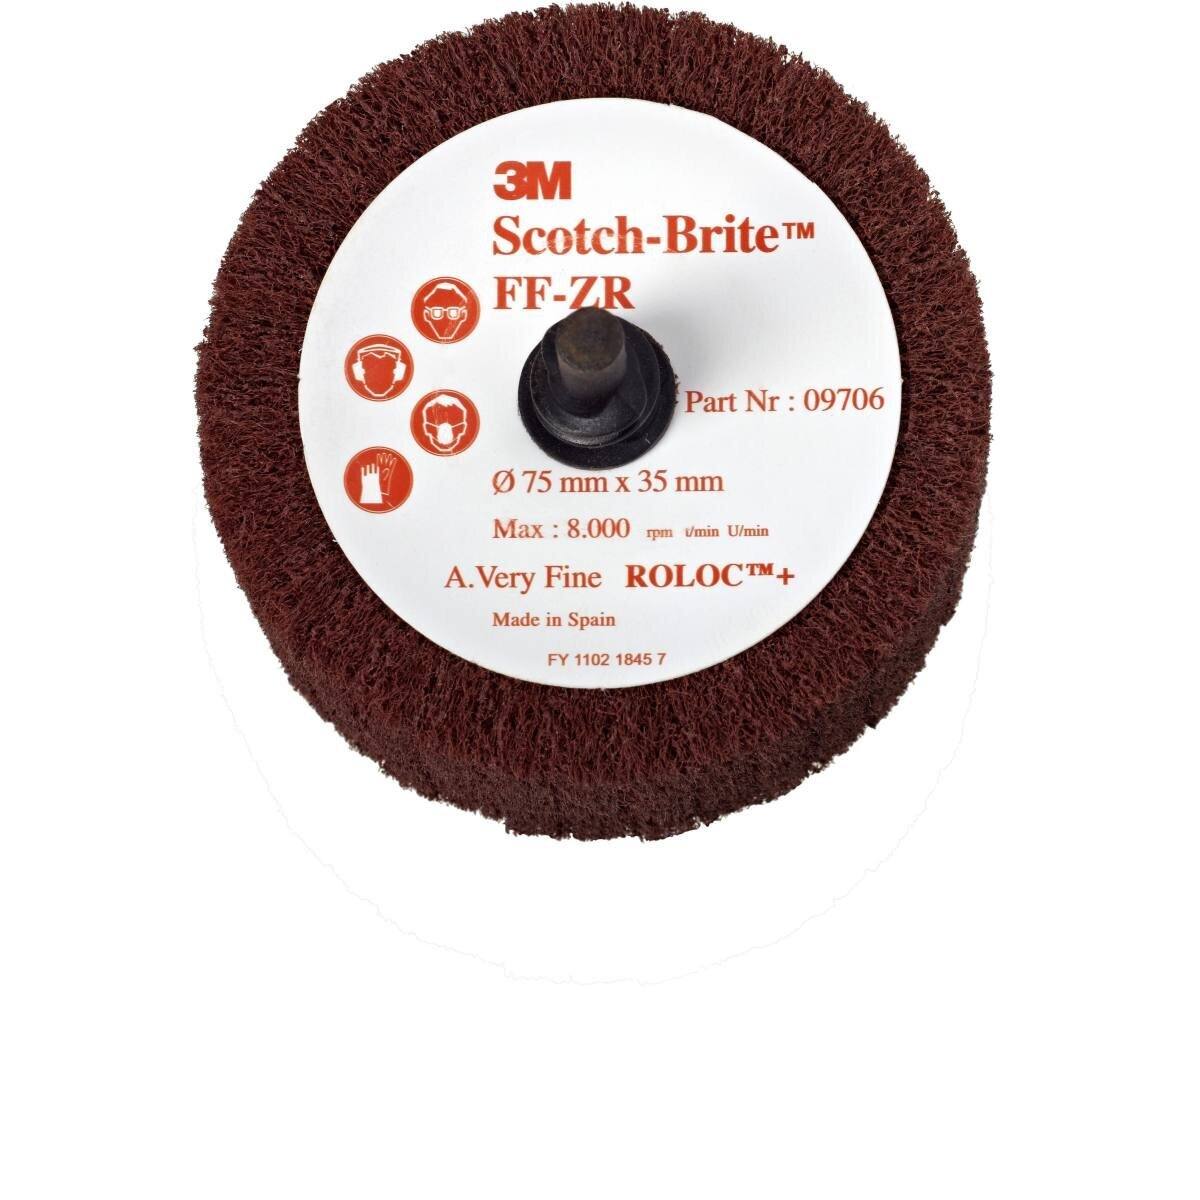 3M Scotch-Brite Roloc Cepillo de púas FF-ZR, rojo-marrón, 50,8 mm, 25 mm, A, muy fino #09704